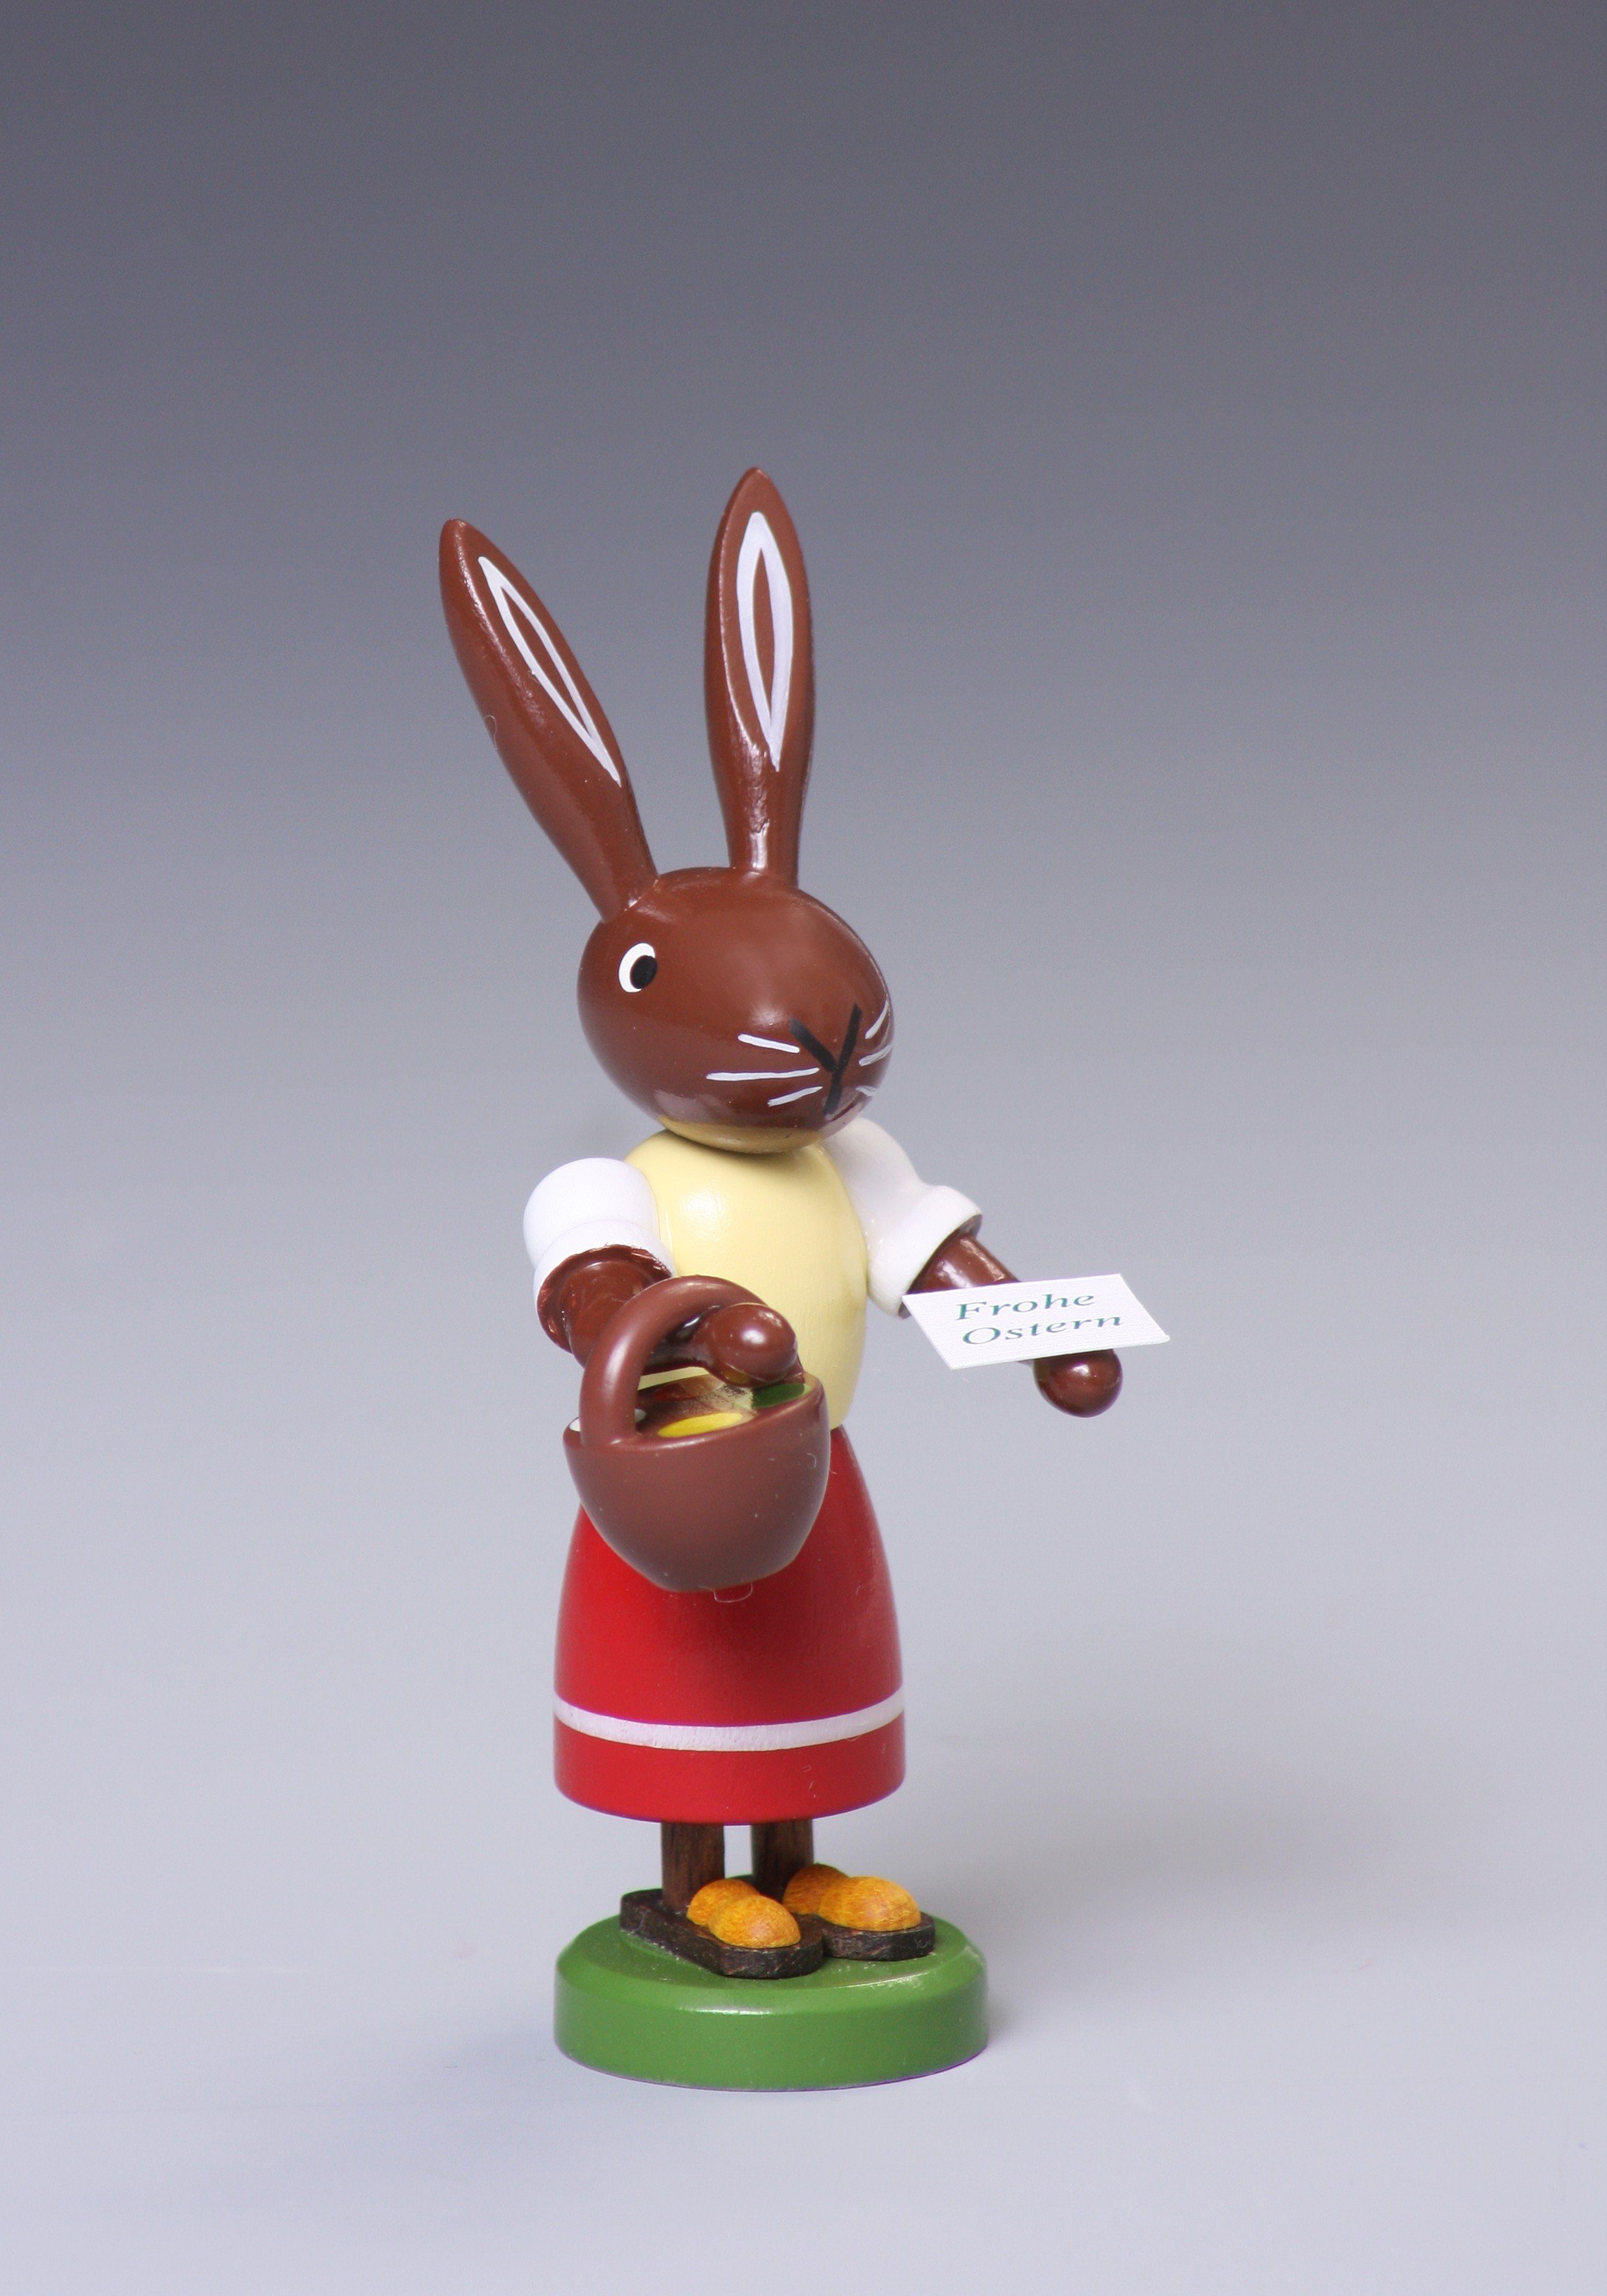 Osterhase Osterfigur Hase mit Handkorb Höhe ca 9 cm NEU, mit Zettel "Frohe Ostern"""